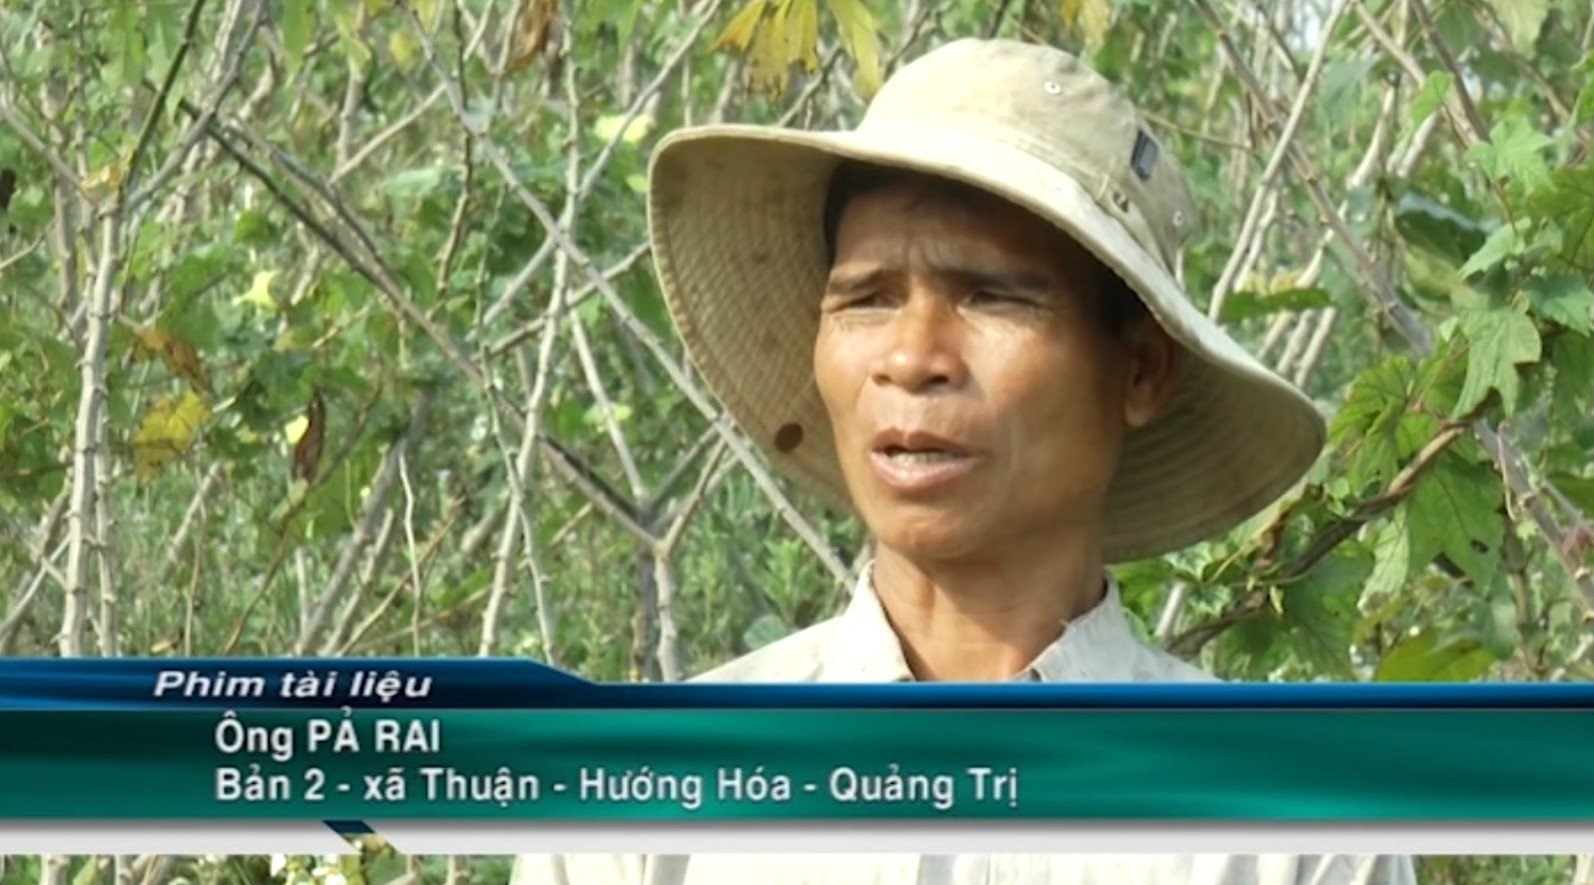 Nông dân Pả Rai- bản 2 xã Thuận, huyện Hướng Hóa xuất hiện trong phim tài liệu “ Huyện miền núi kiểu mẫu trên Hành lang Kinh tế Đông Tây”.